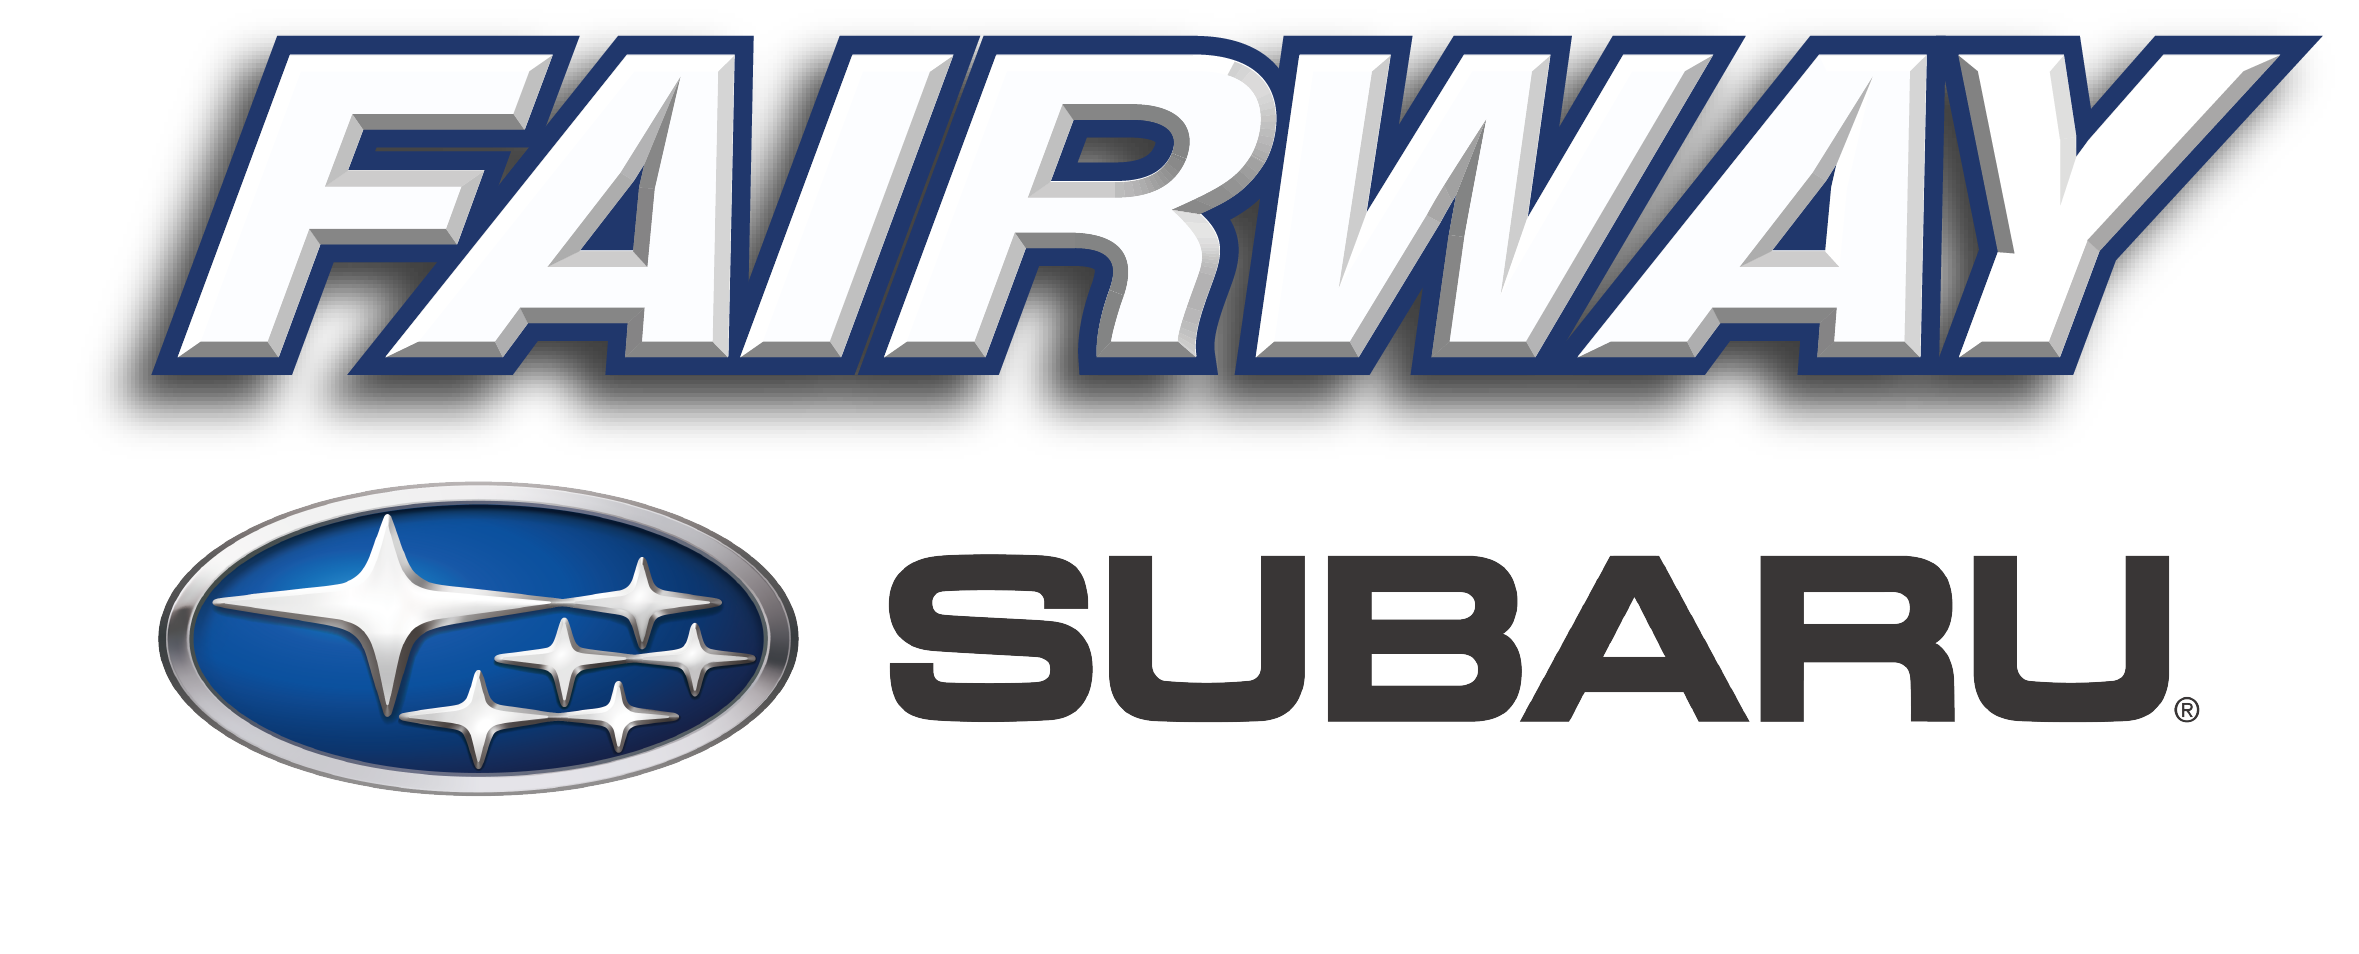 D. Fairway Subaru (Steel)